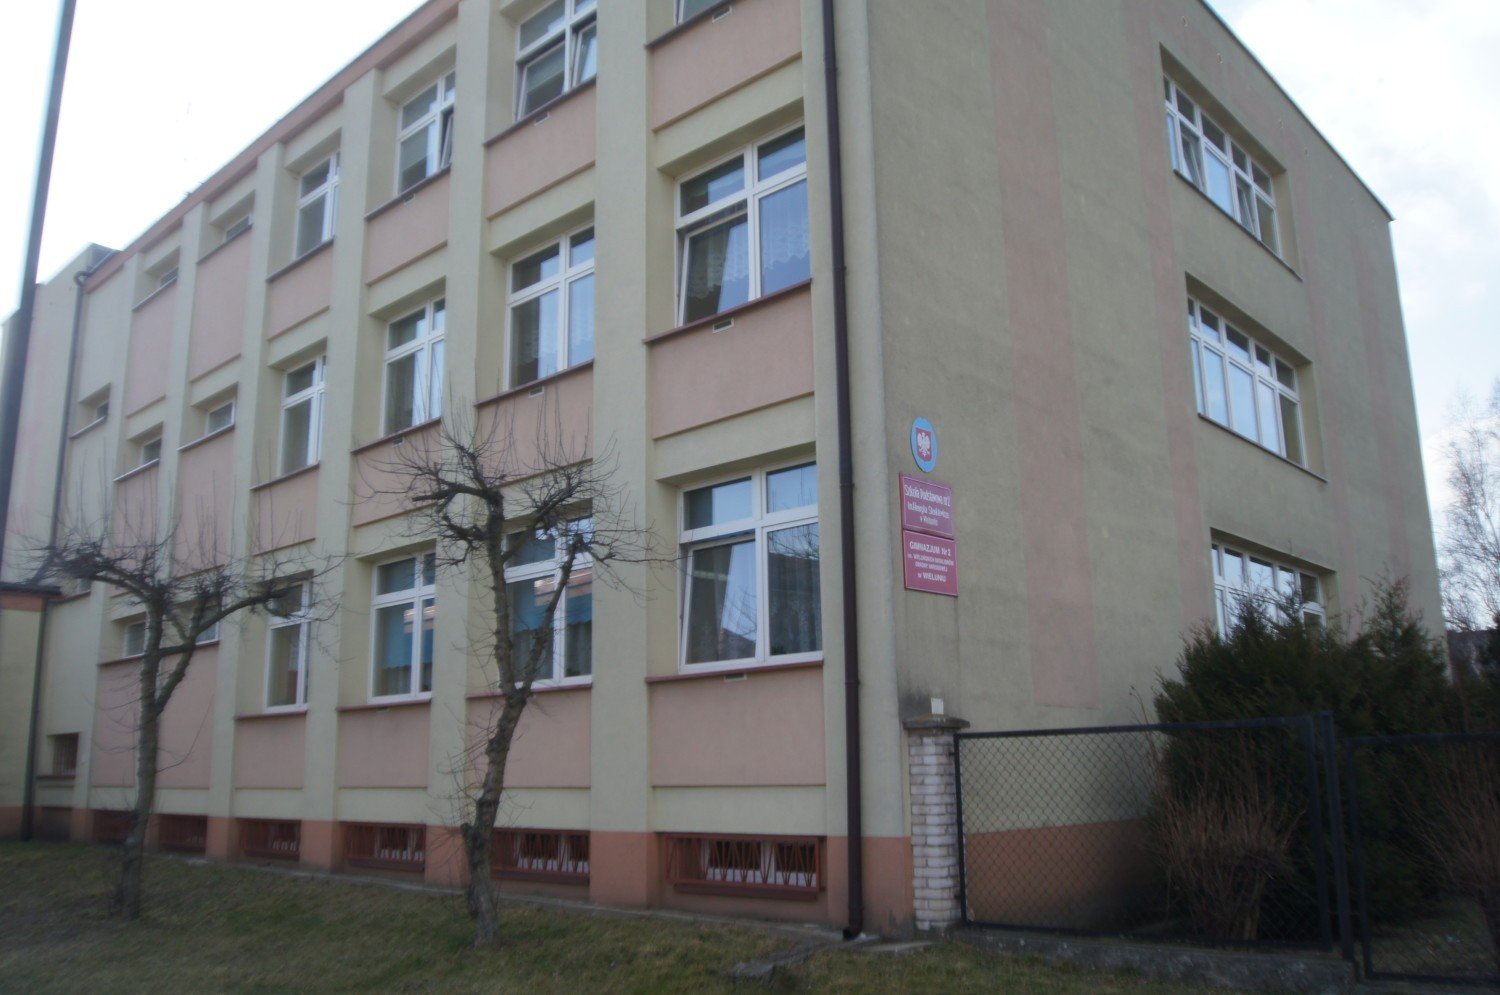 Szkoła Podstawowa Nr 2 Luzino Szkoła Podstawowa nr 2 powróci do starej nazwy - NaszeMiasto.pl